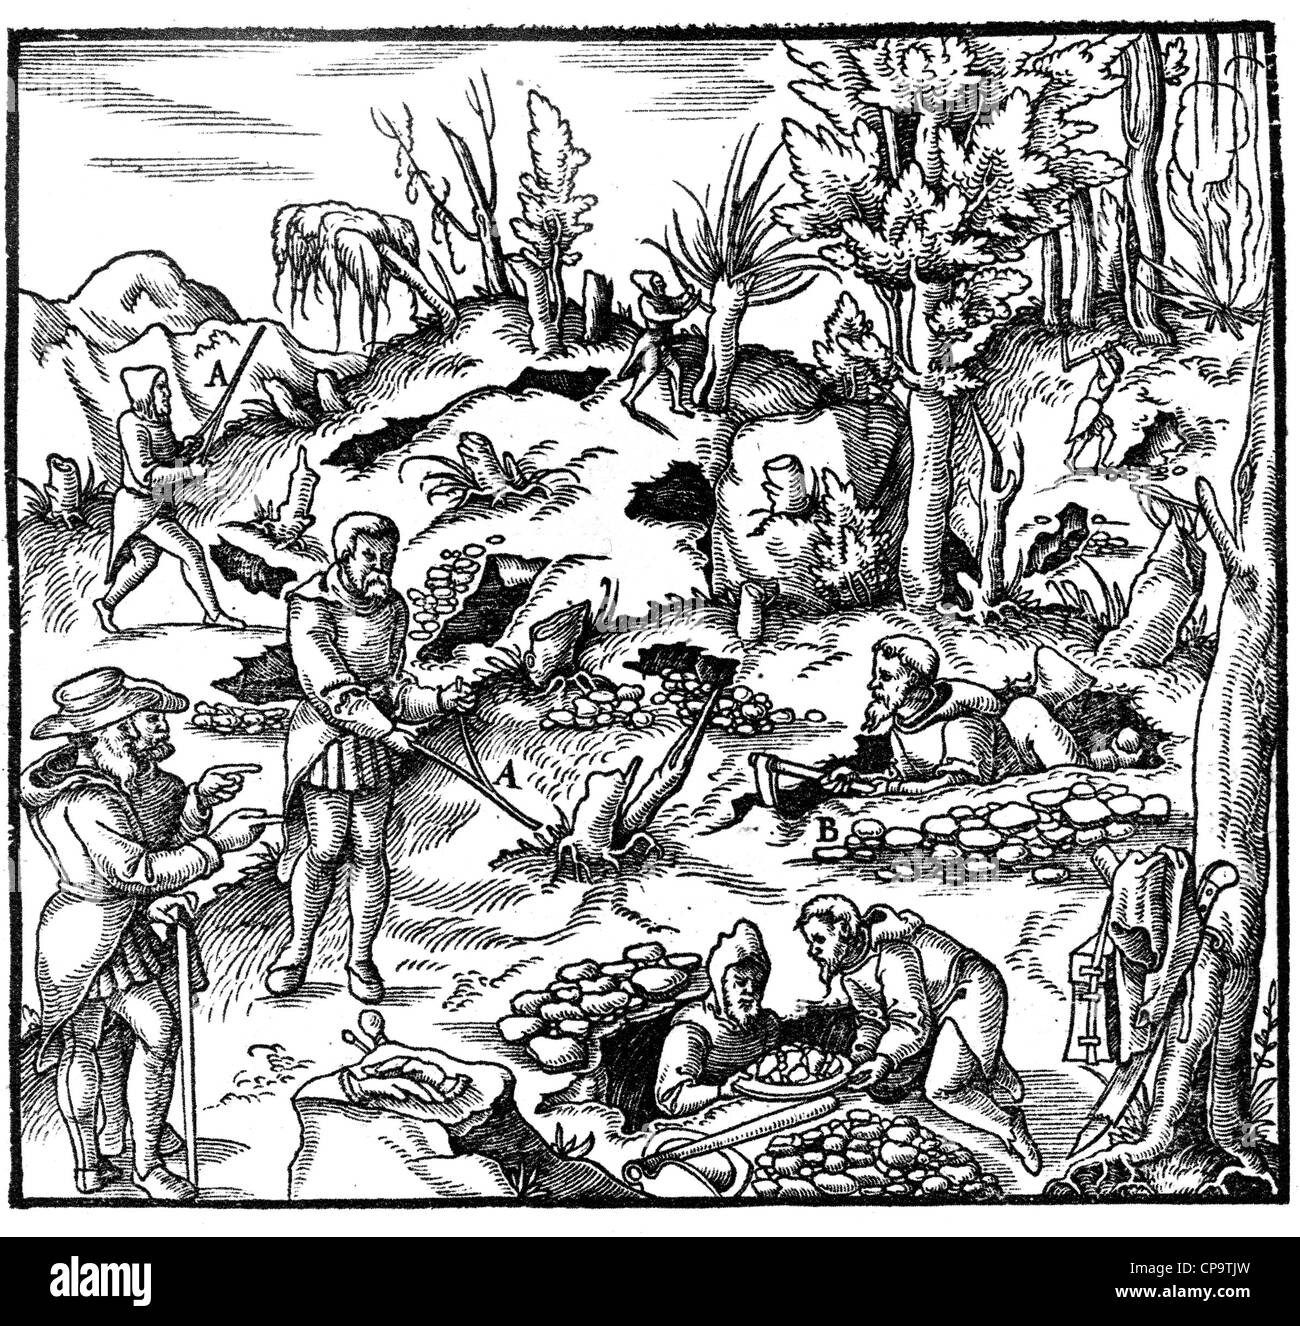 AGRICOLA "DE RE METALLICA" veröffentlicht 1561 zeigen eine Wünschelrute verwendet wird, um die Mineralien zu finden Stockfoto